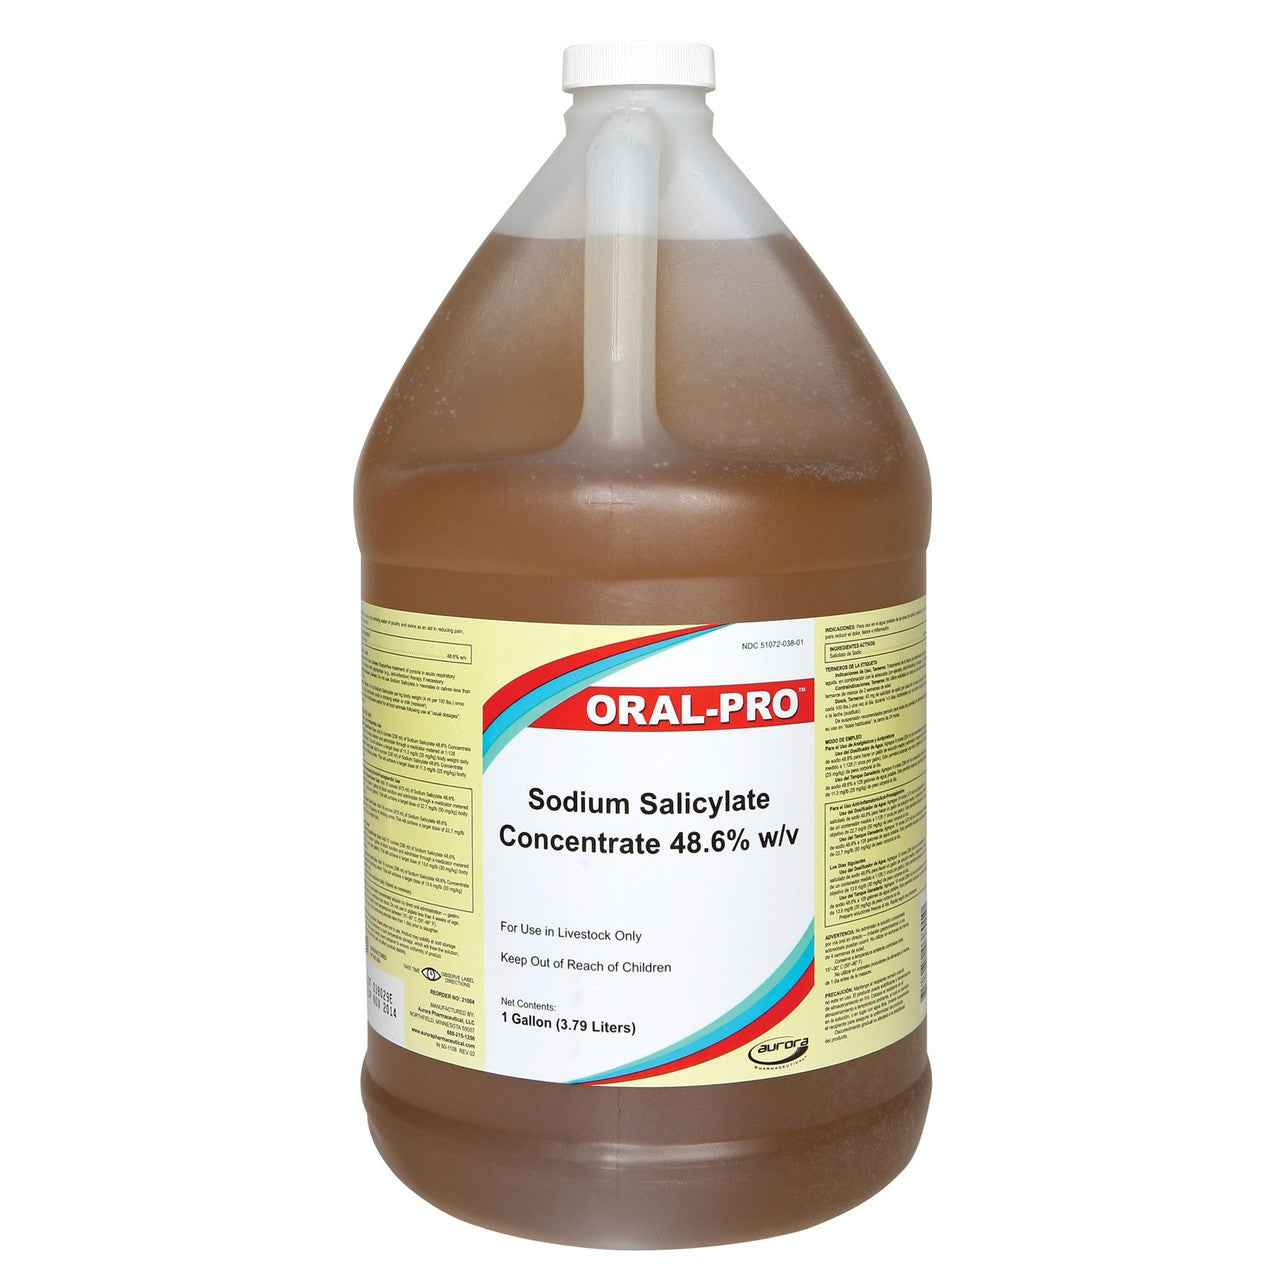 Oral Pro (Sodium Salicylate Concentrate 48.6% w/v) Gallon